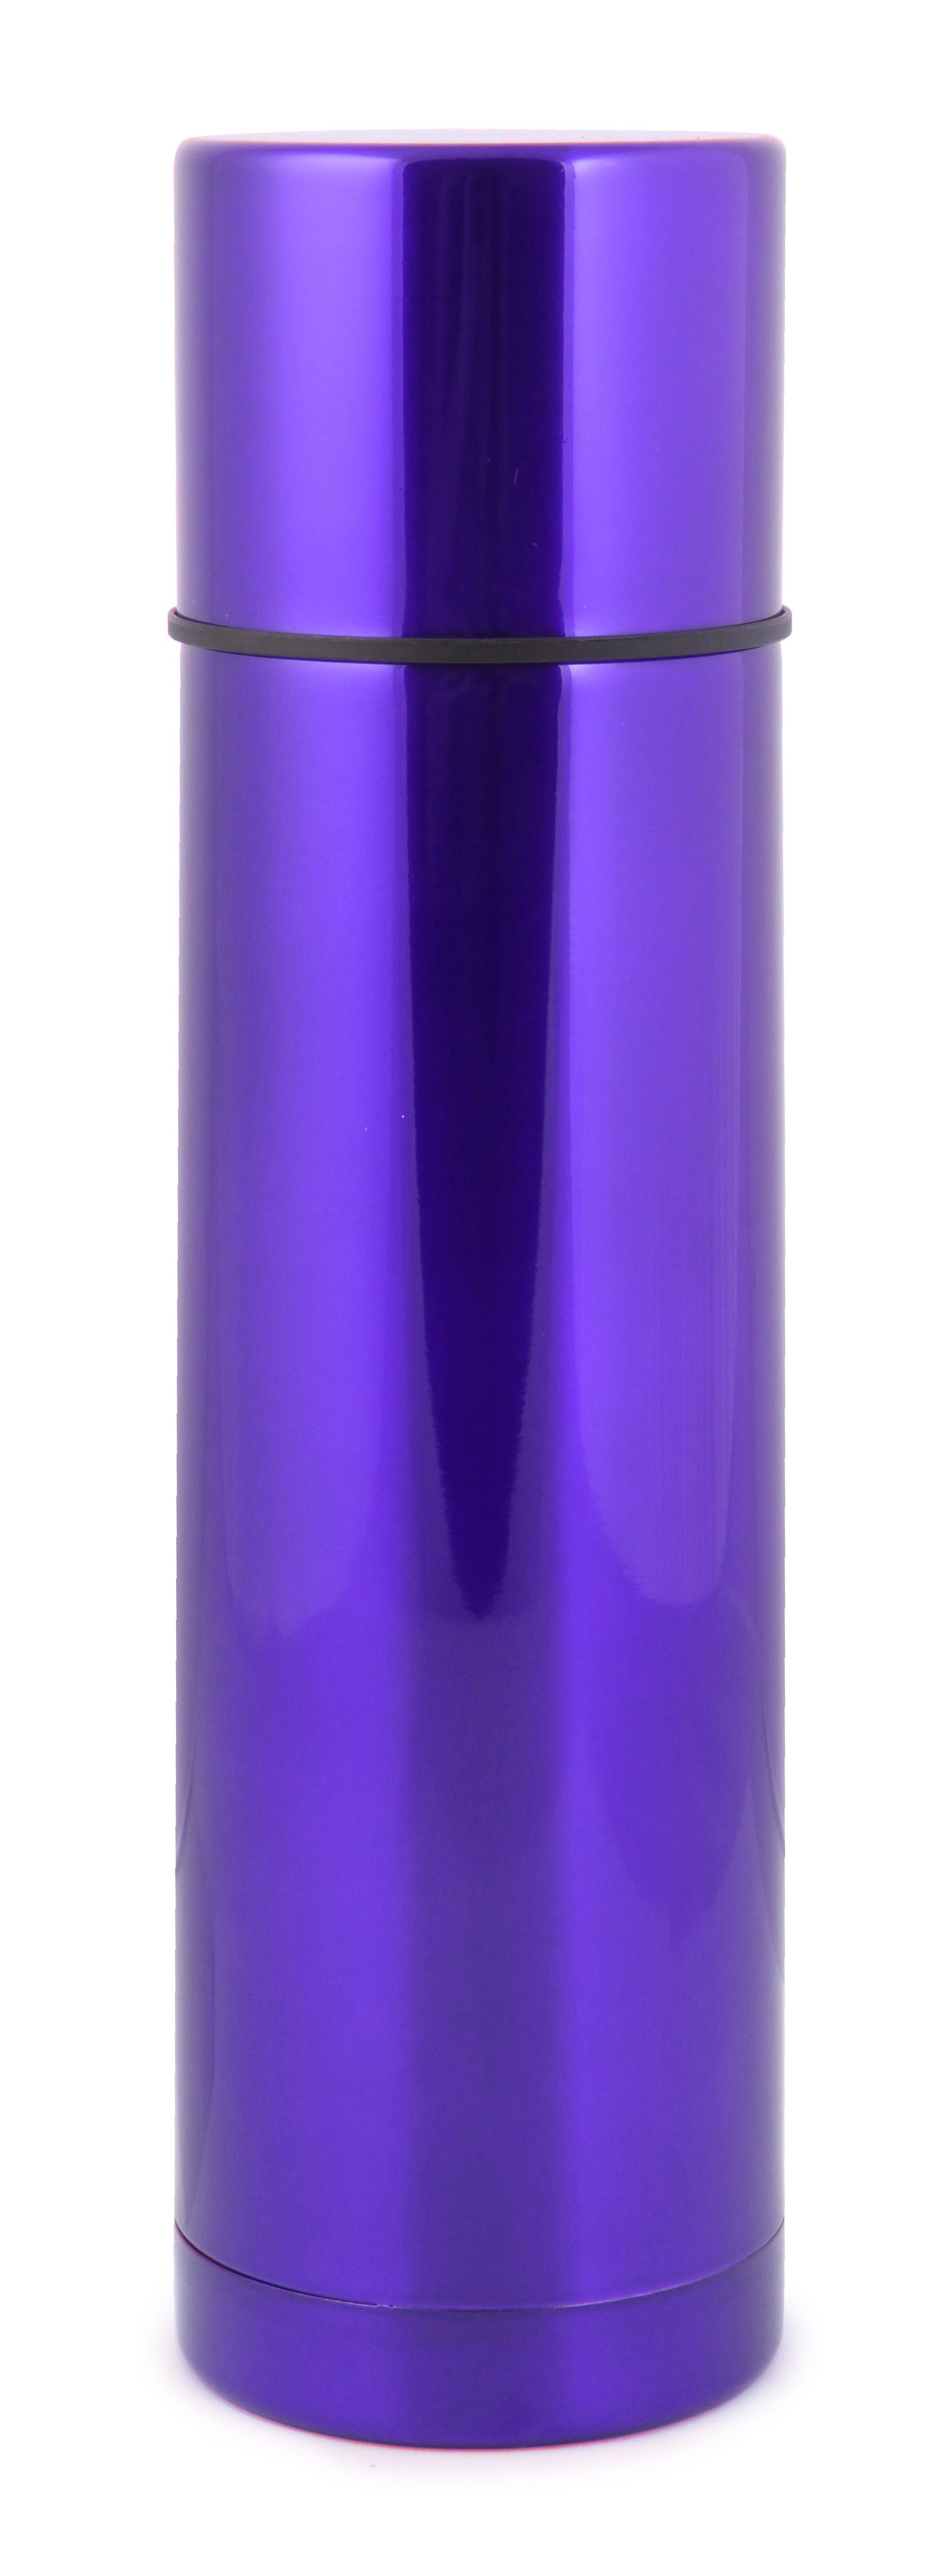 Термос Bergamo, 750 мл, фиолетовый (7927-9) - фото 1